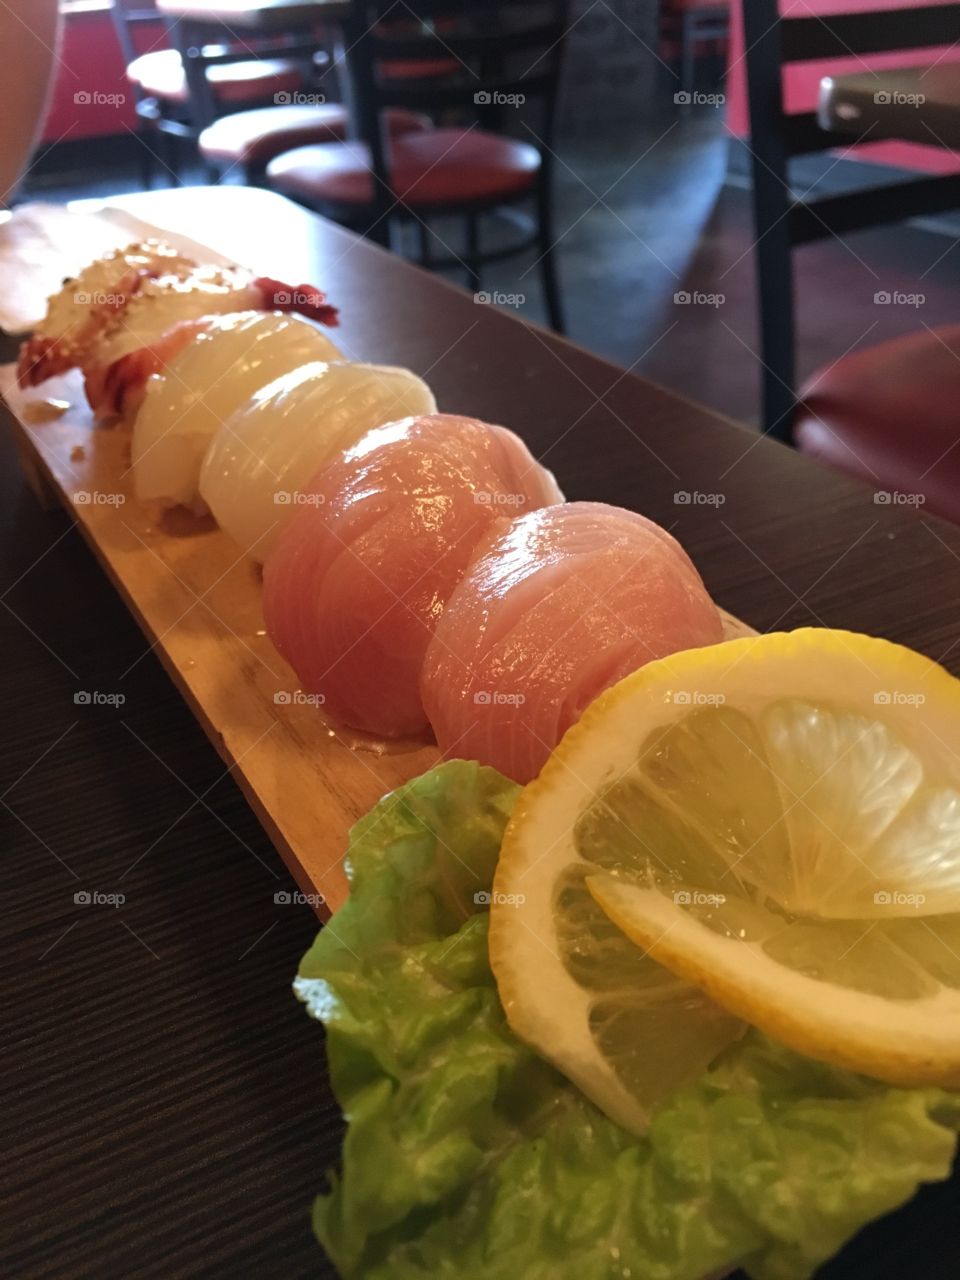 Sushi selection